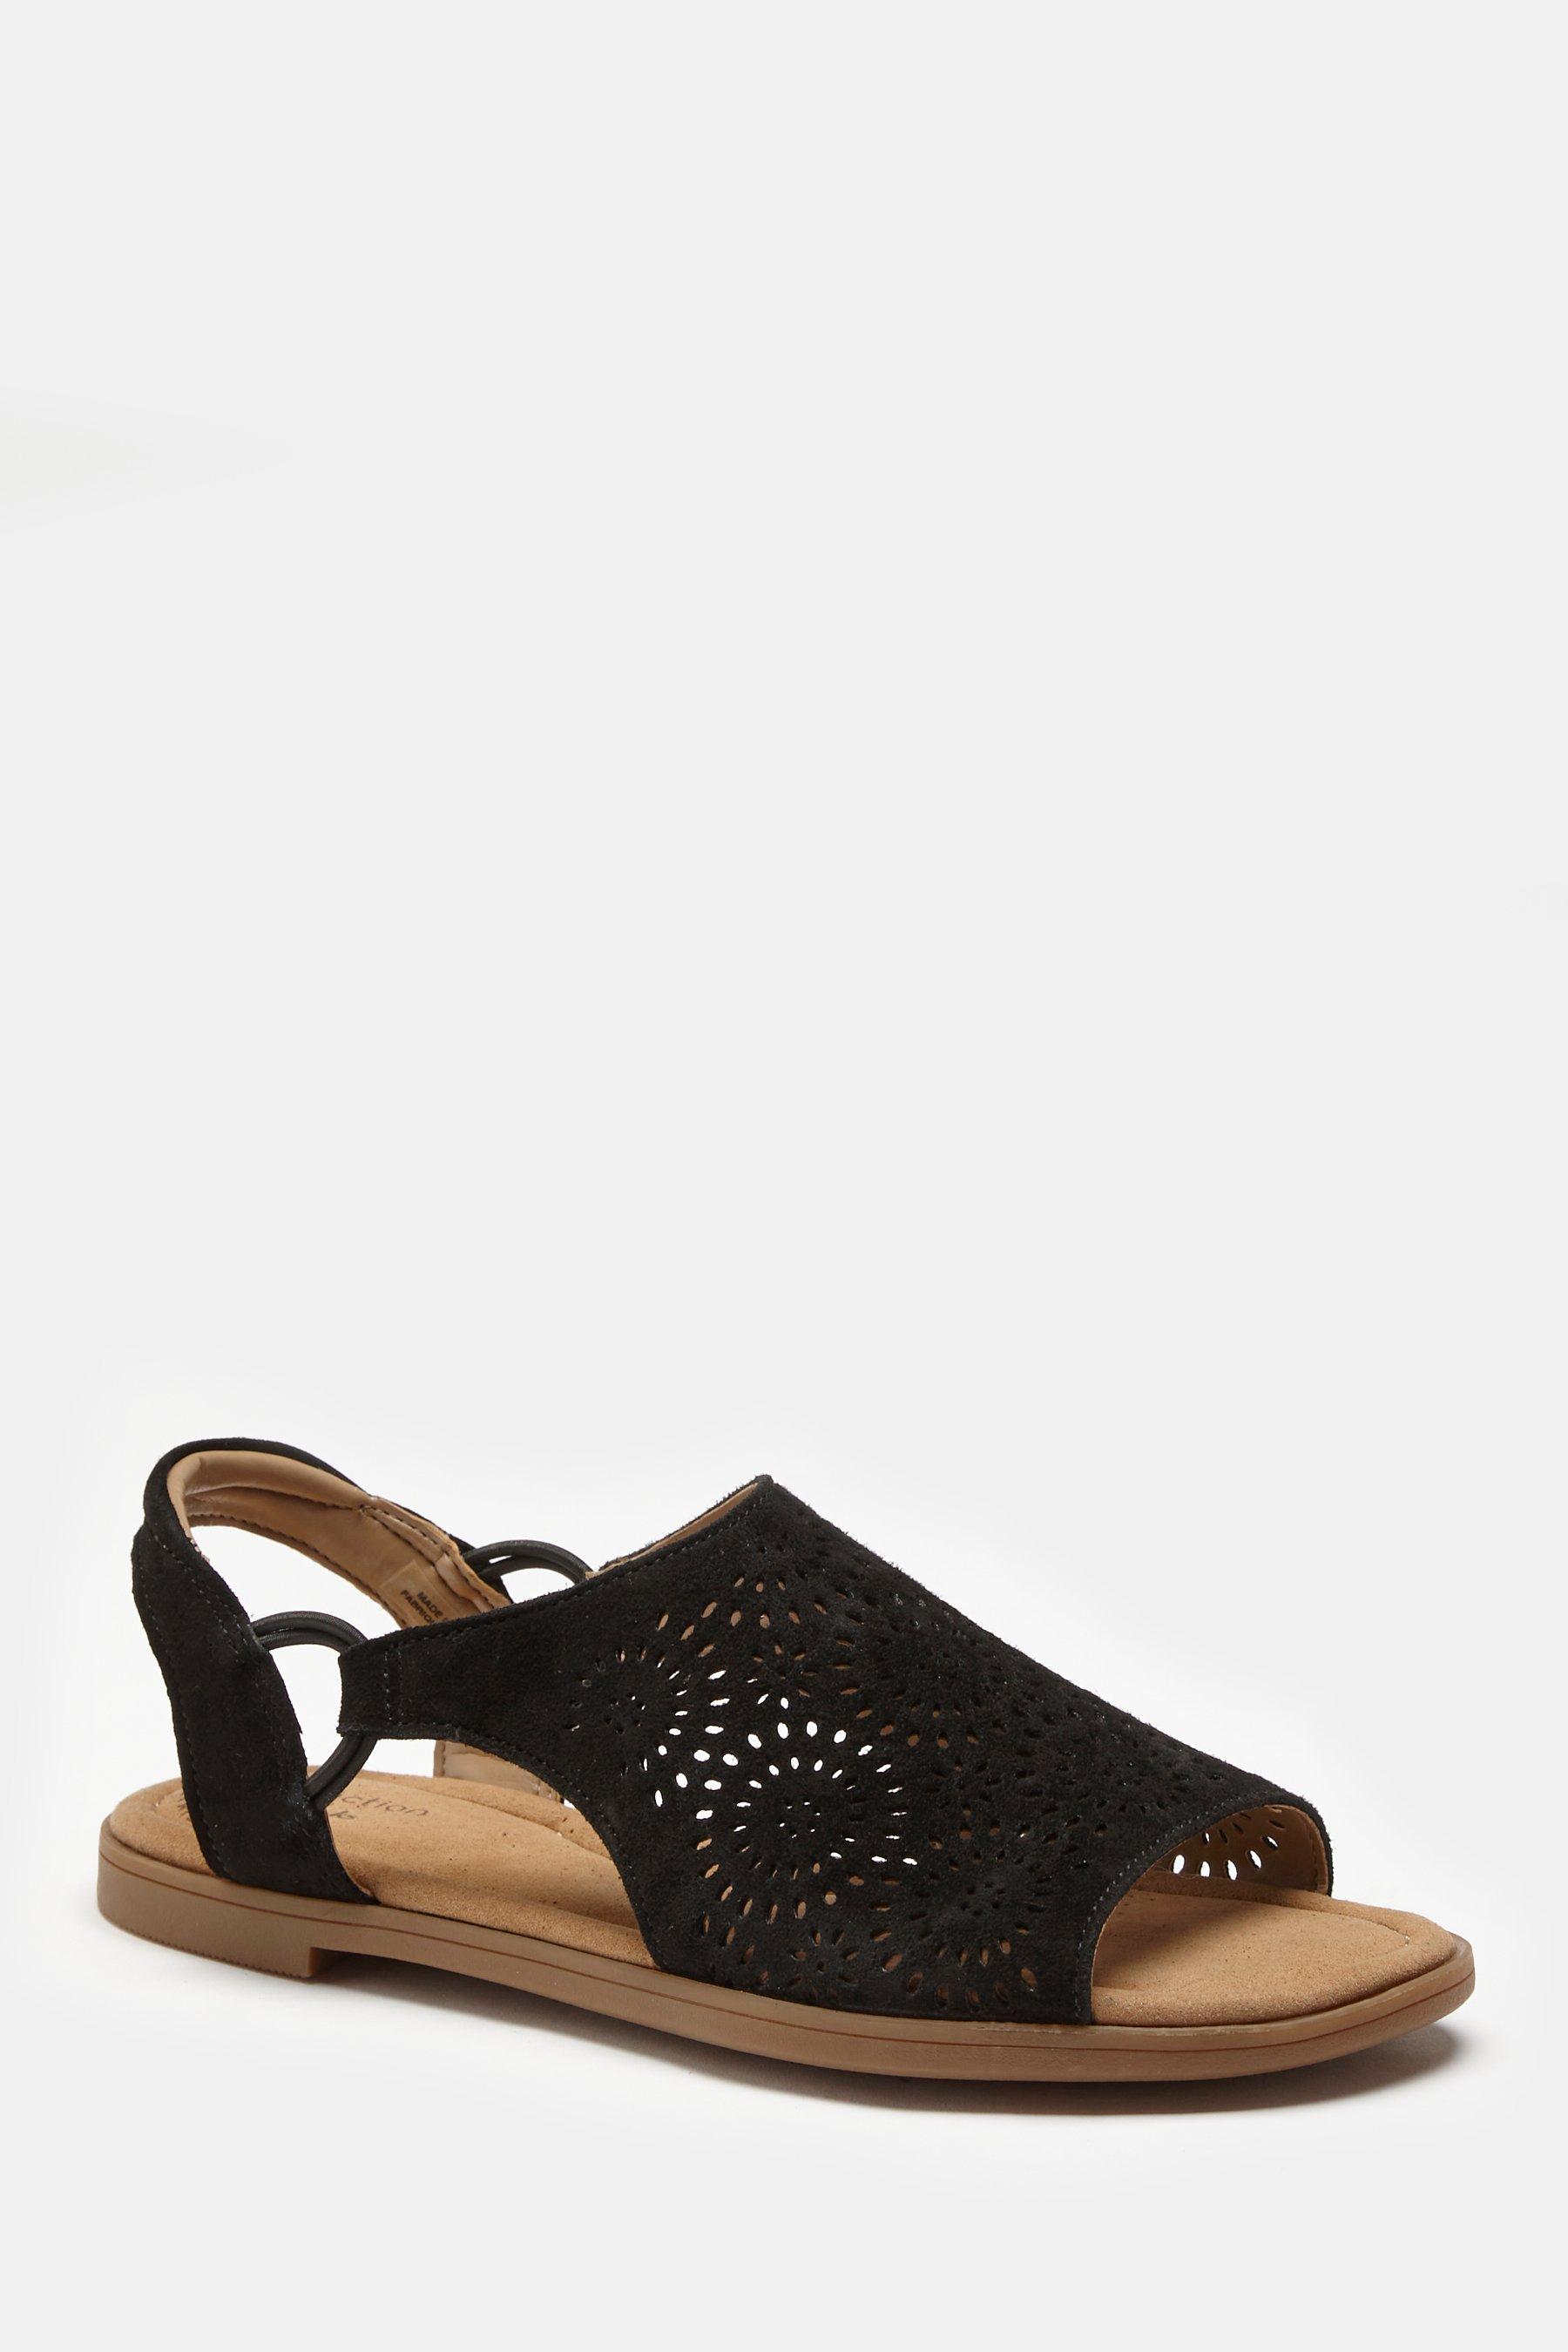 clarks reyna swirl black sandals - womens - size: 4